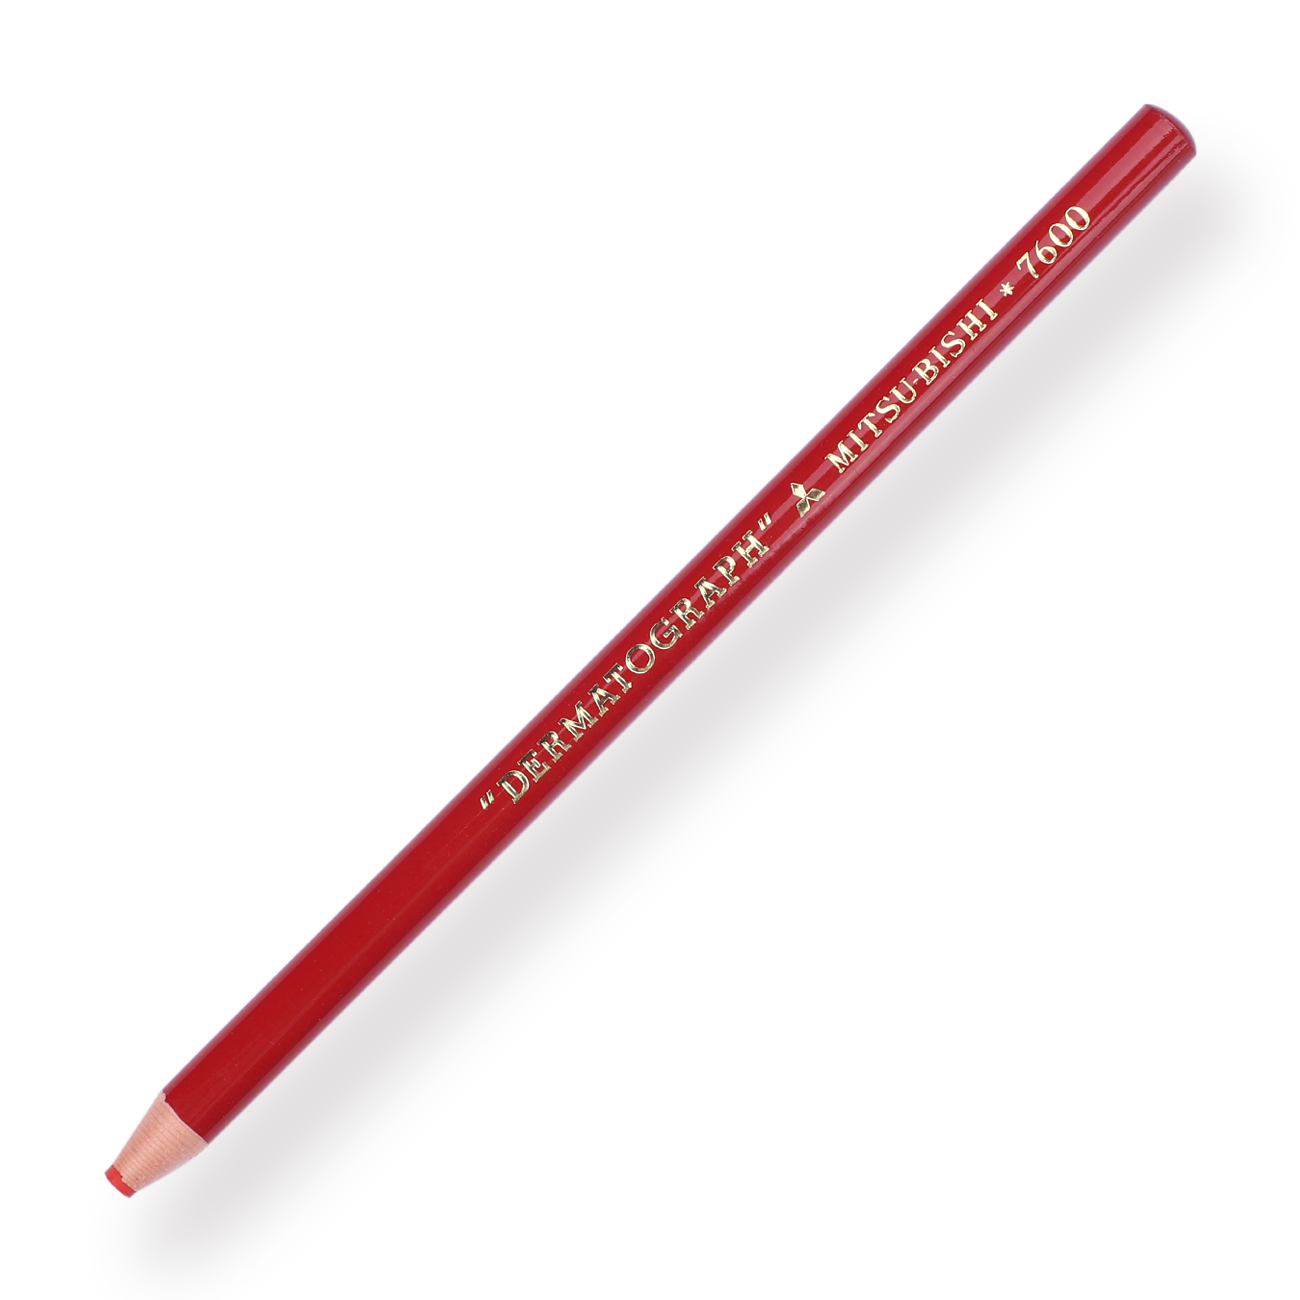 Uni-ball Dermatograph 7600 Colored Pencil - Red